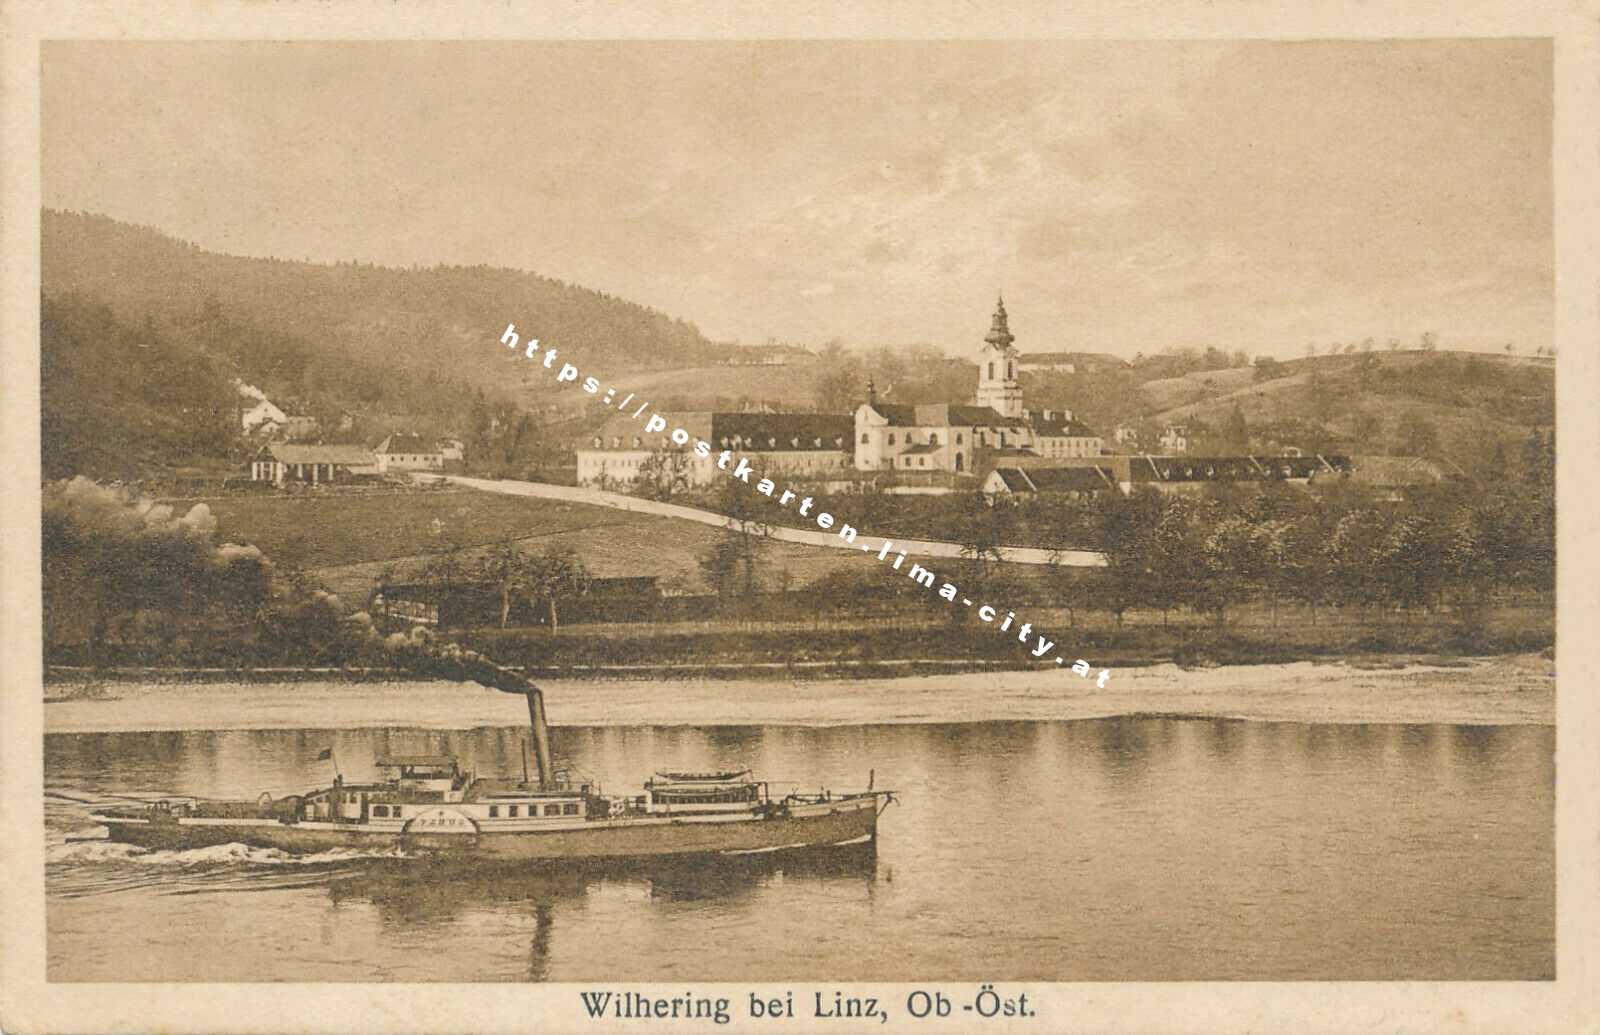 Wilhering bei Linz 1931